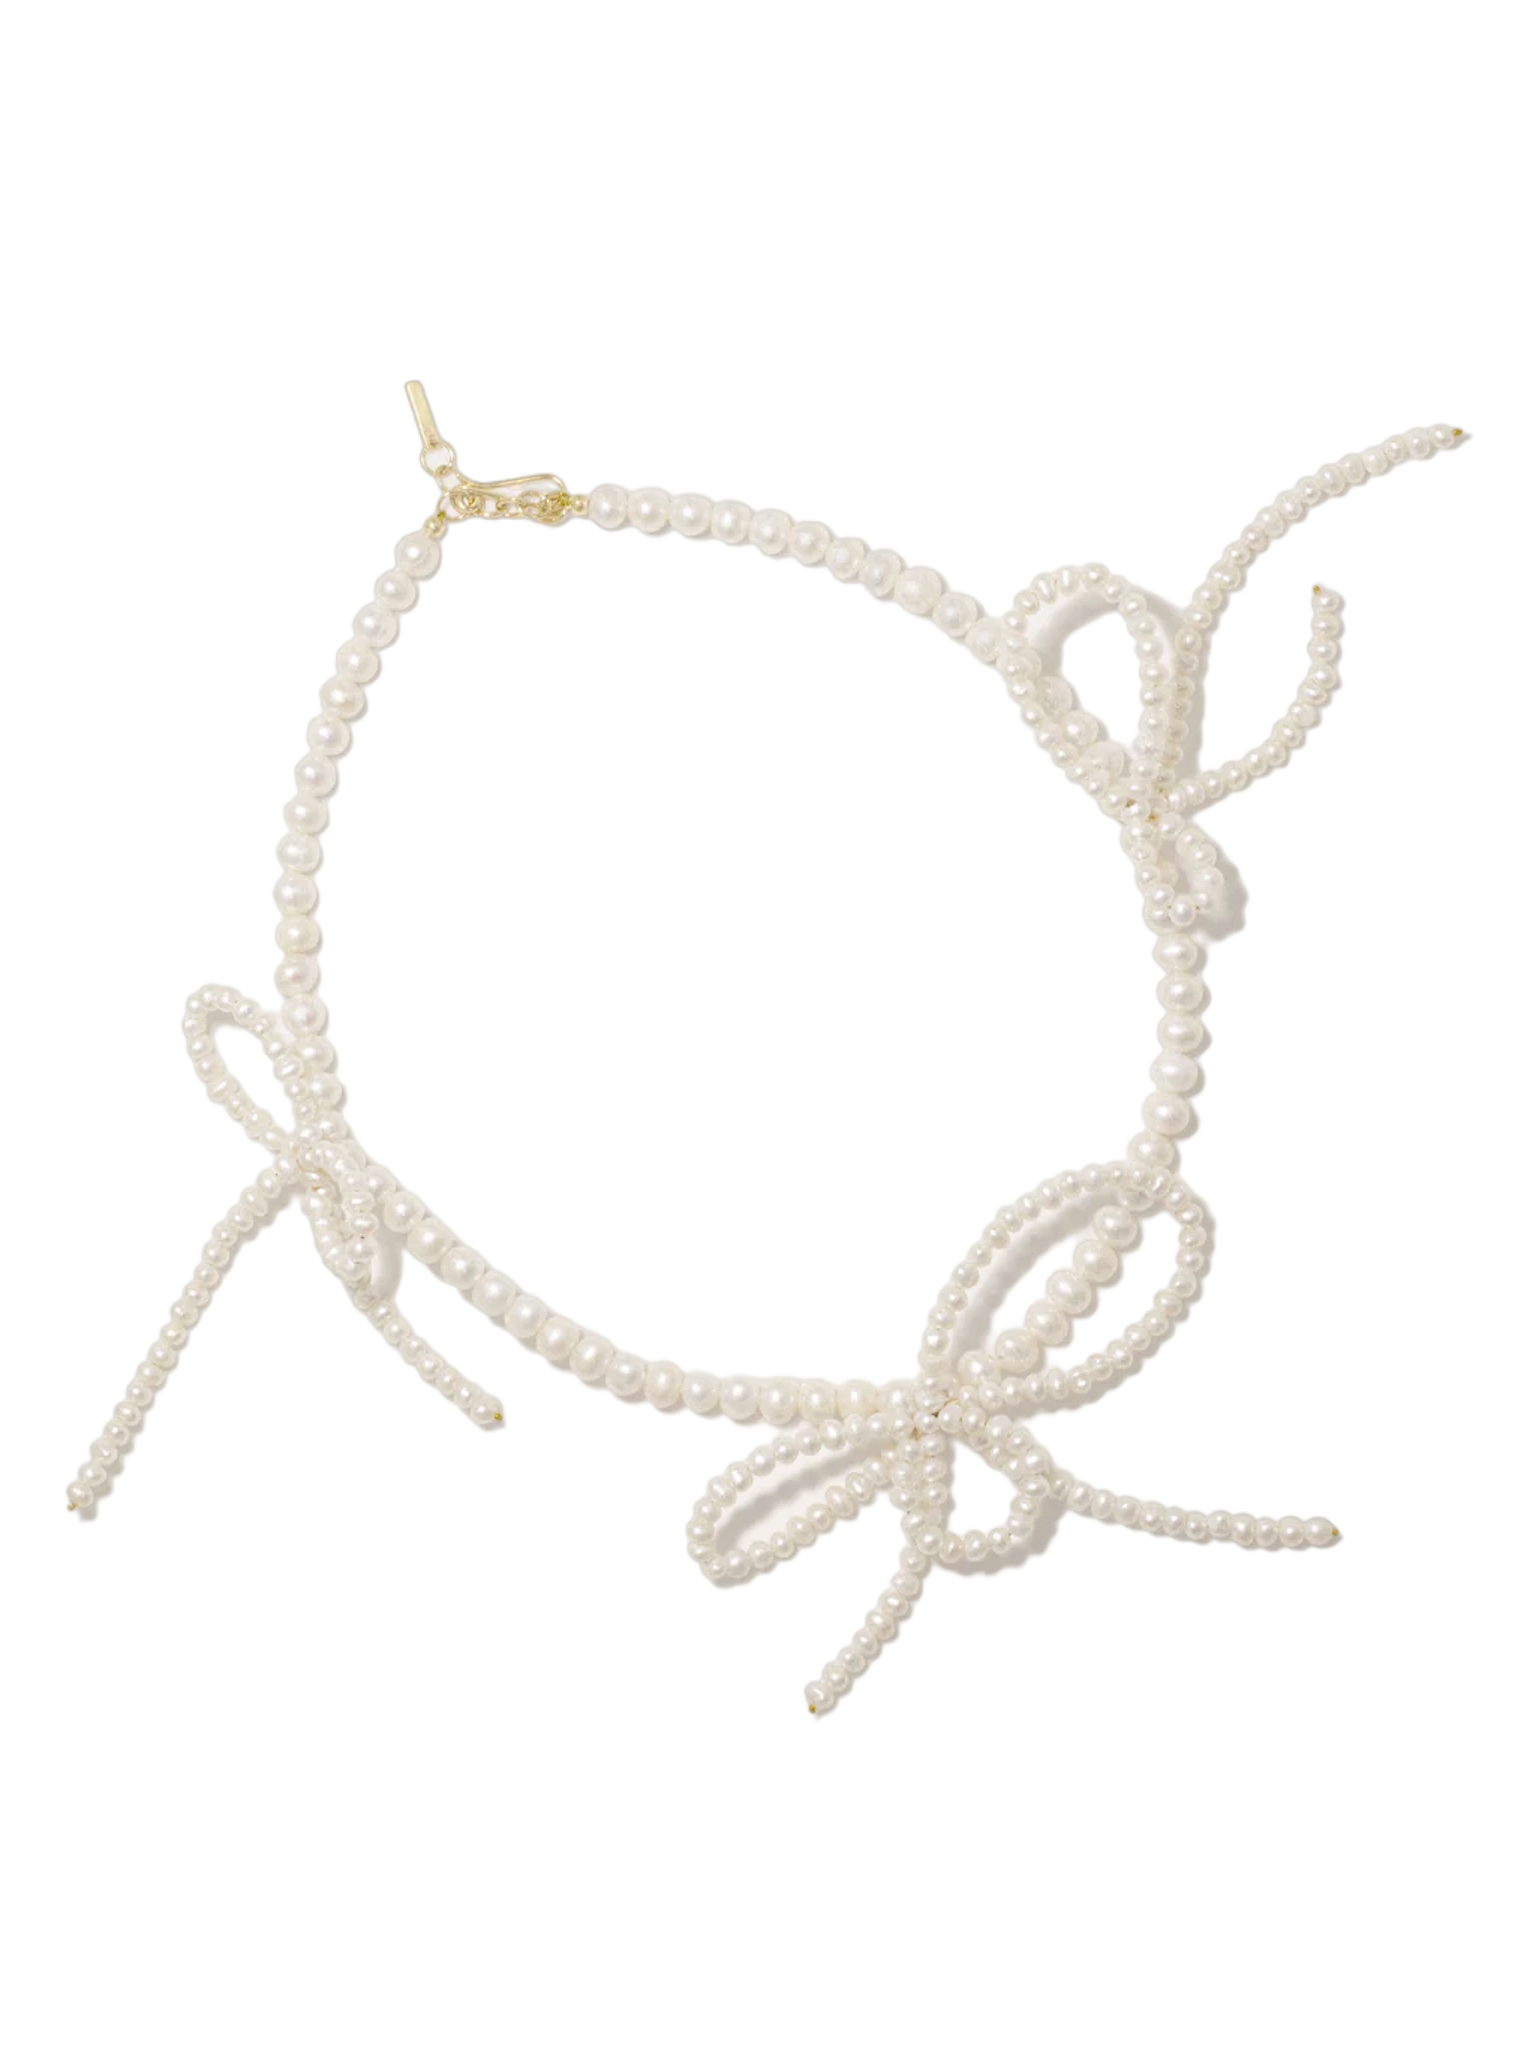 Loop‐the-loop necklace